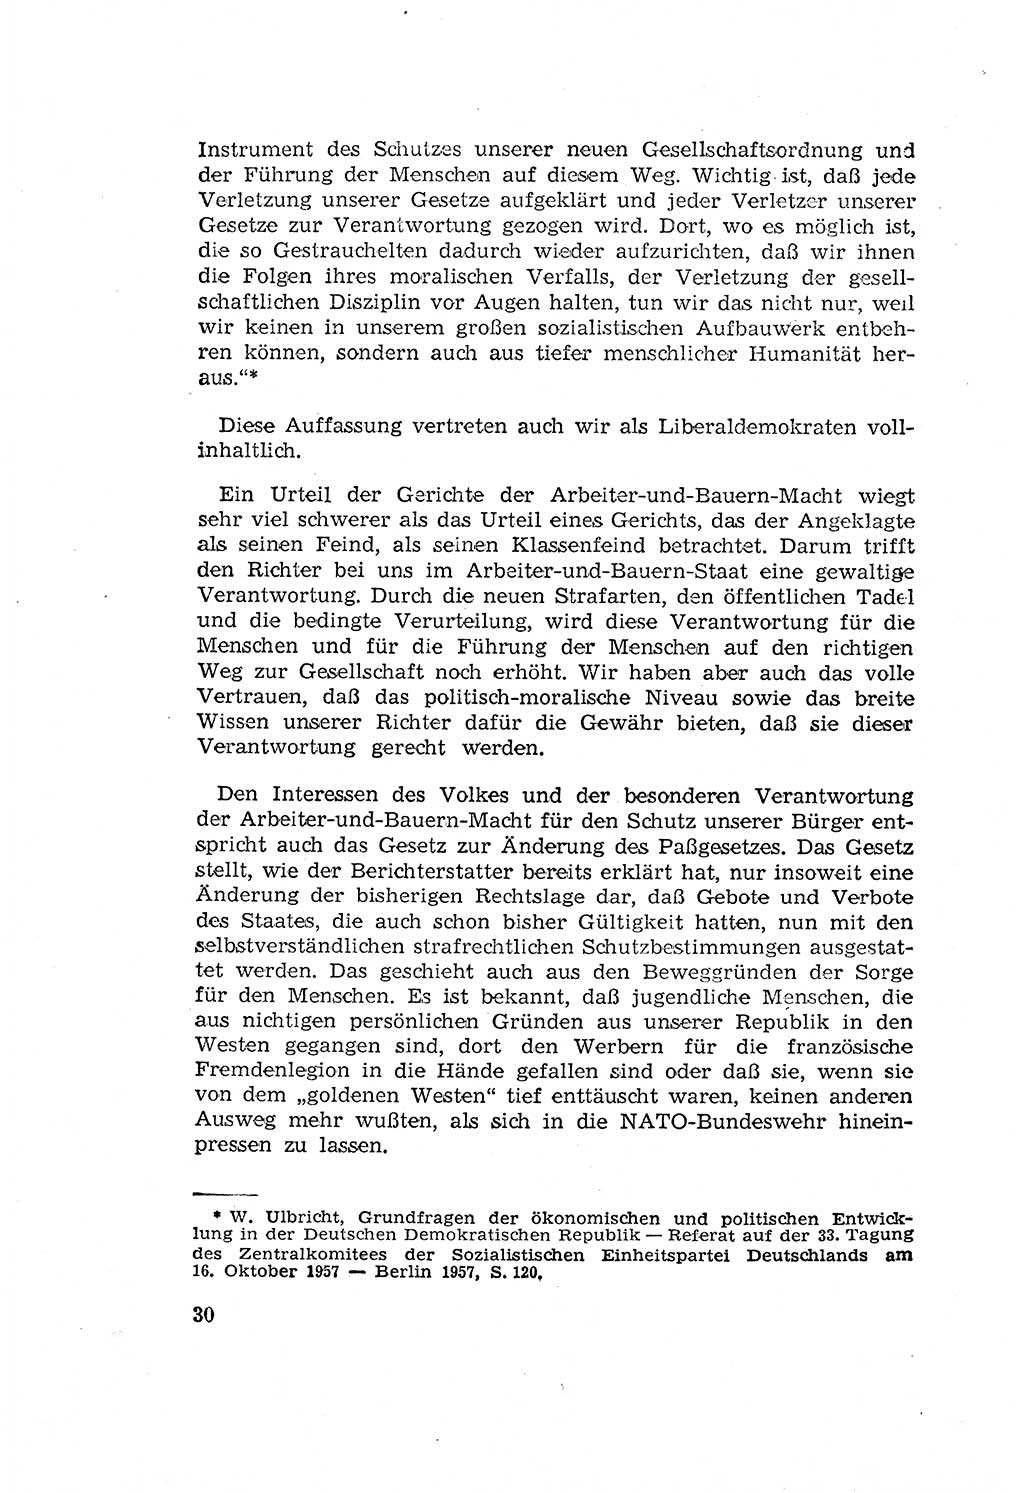 Zum Erlaß des Gesetzes zur Ergänzung des Strafgesetzbuches (StGB), Strafergänzungsgesetz (StEG) [Deutsche Demokratische Republik (DDR)] 1957, Seite 30 (StGB StEG DDR 1957, S. 30)